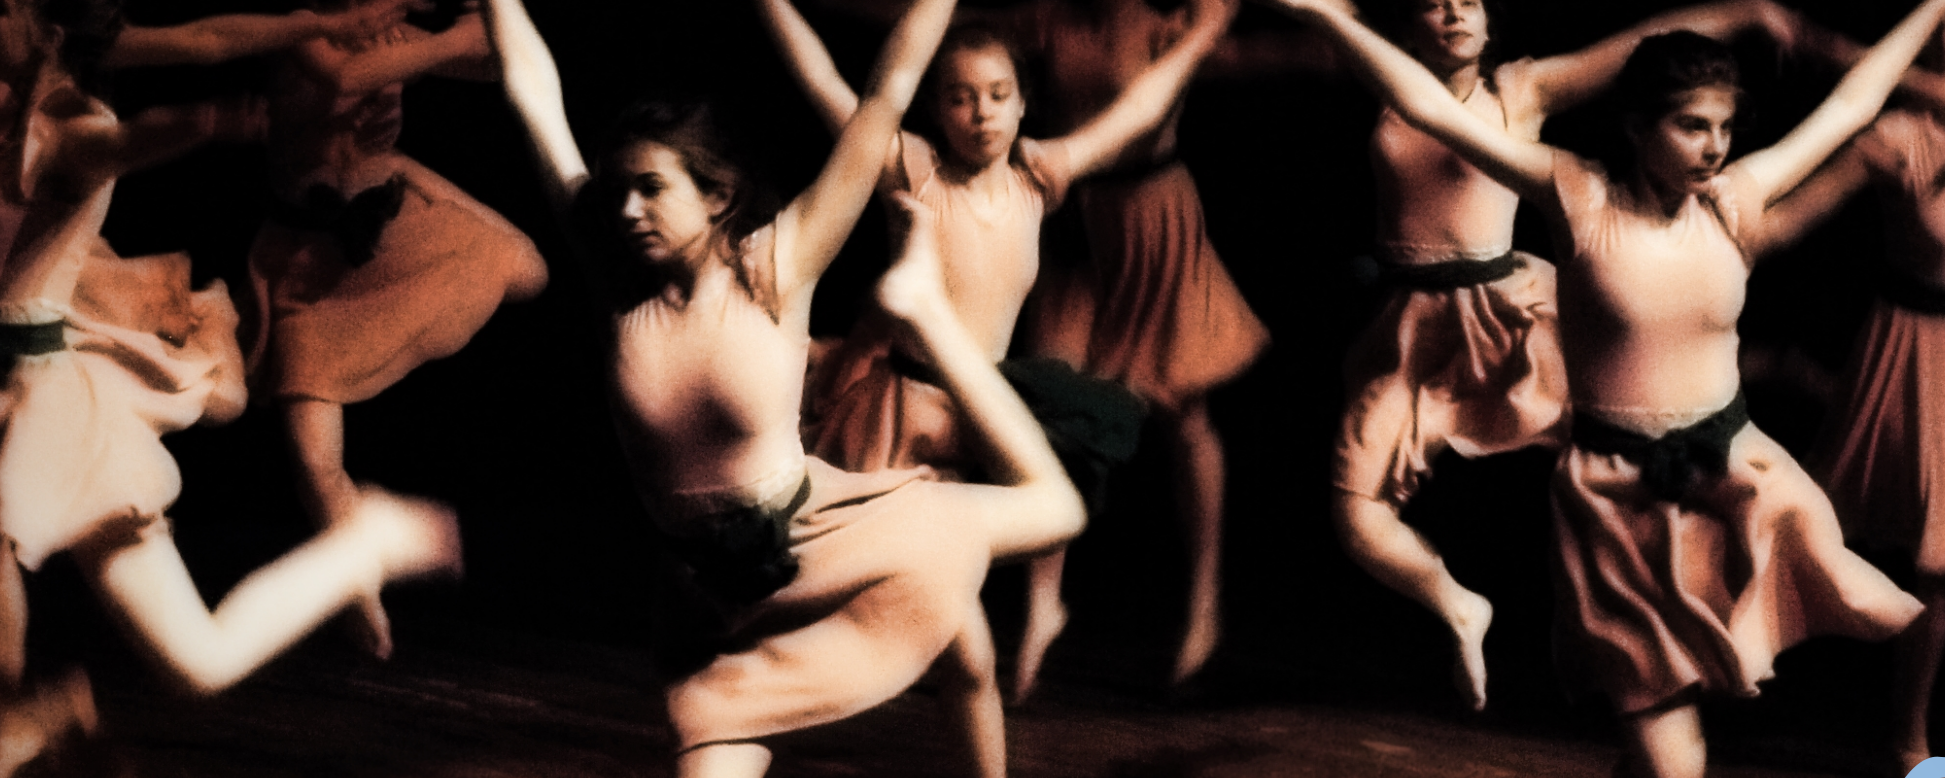 XVIII edycja Wojewódzkiego Festiwalu Współczesnych Form Tanecznych - już w najbliższą sobotę